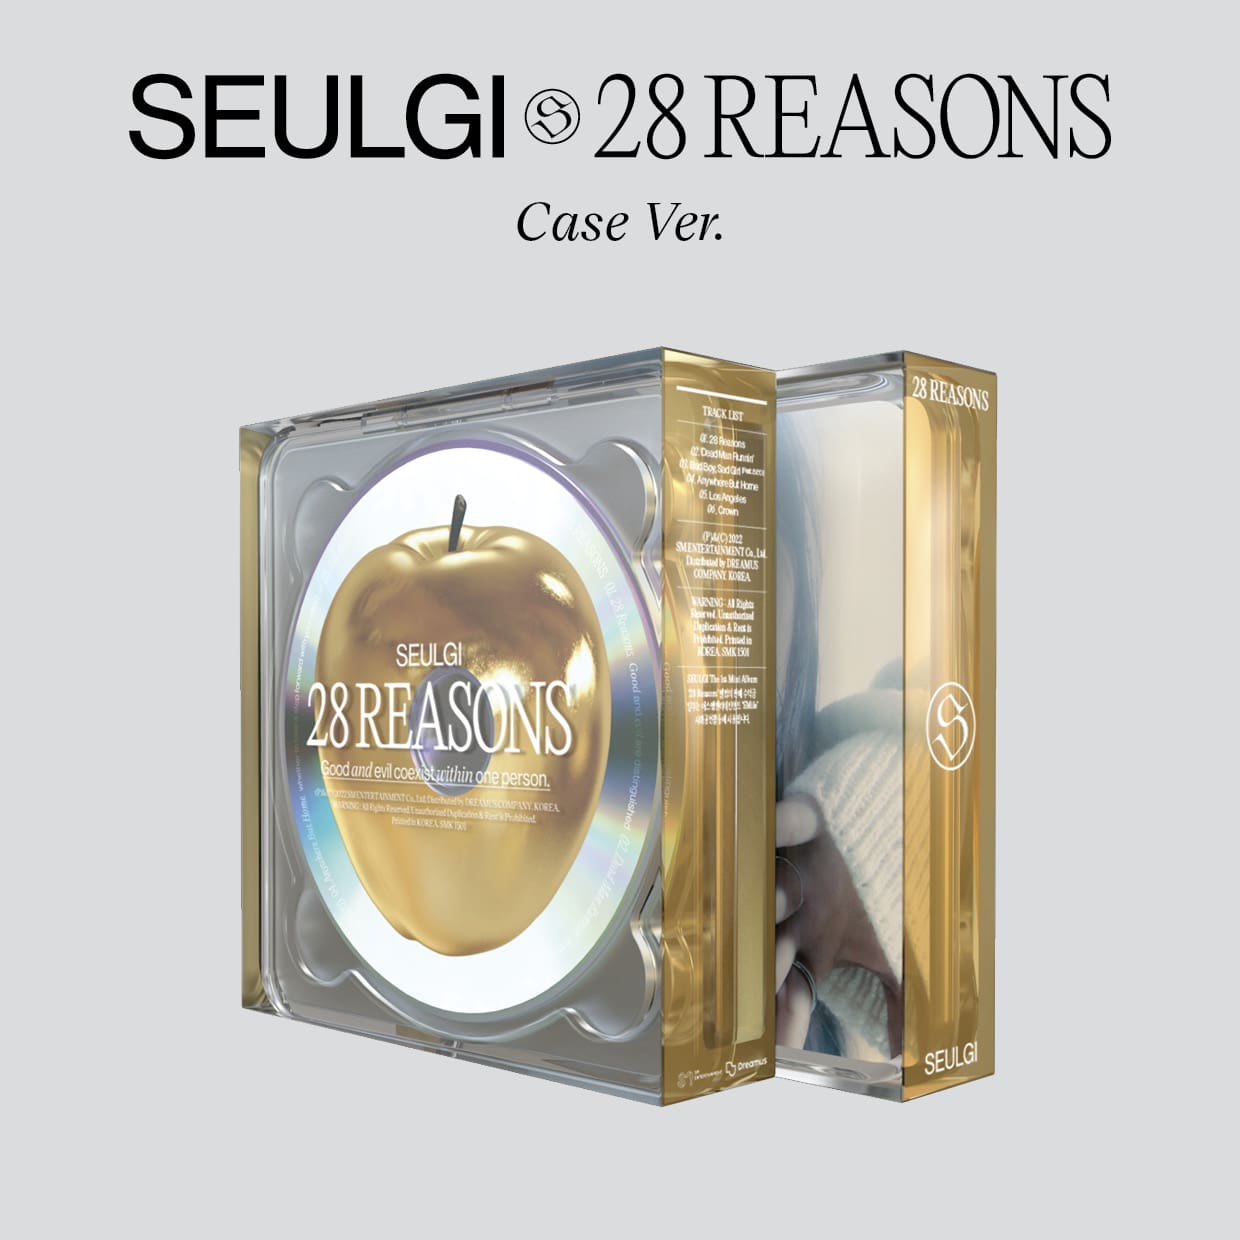 SEULGI Mini Album Vol. 1 - 28 Reasons (Case Ver.)